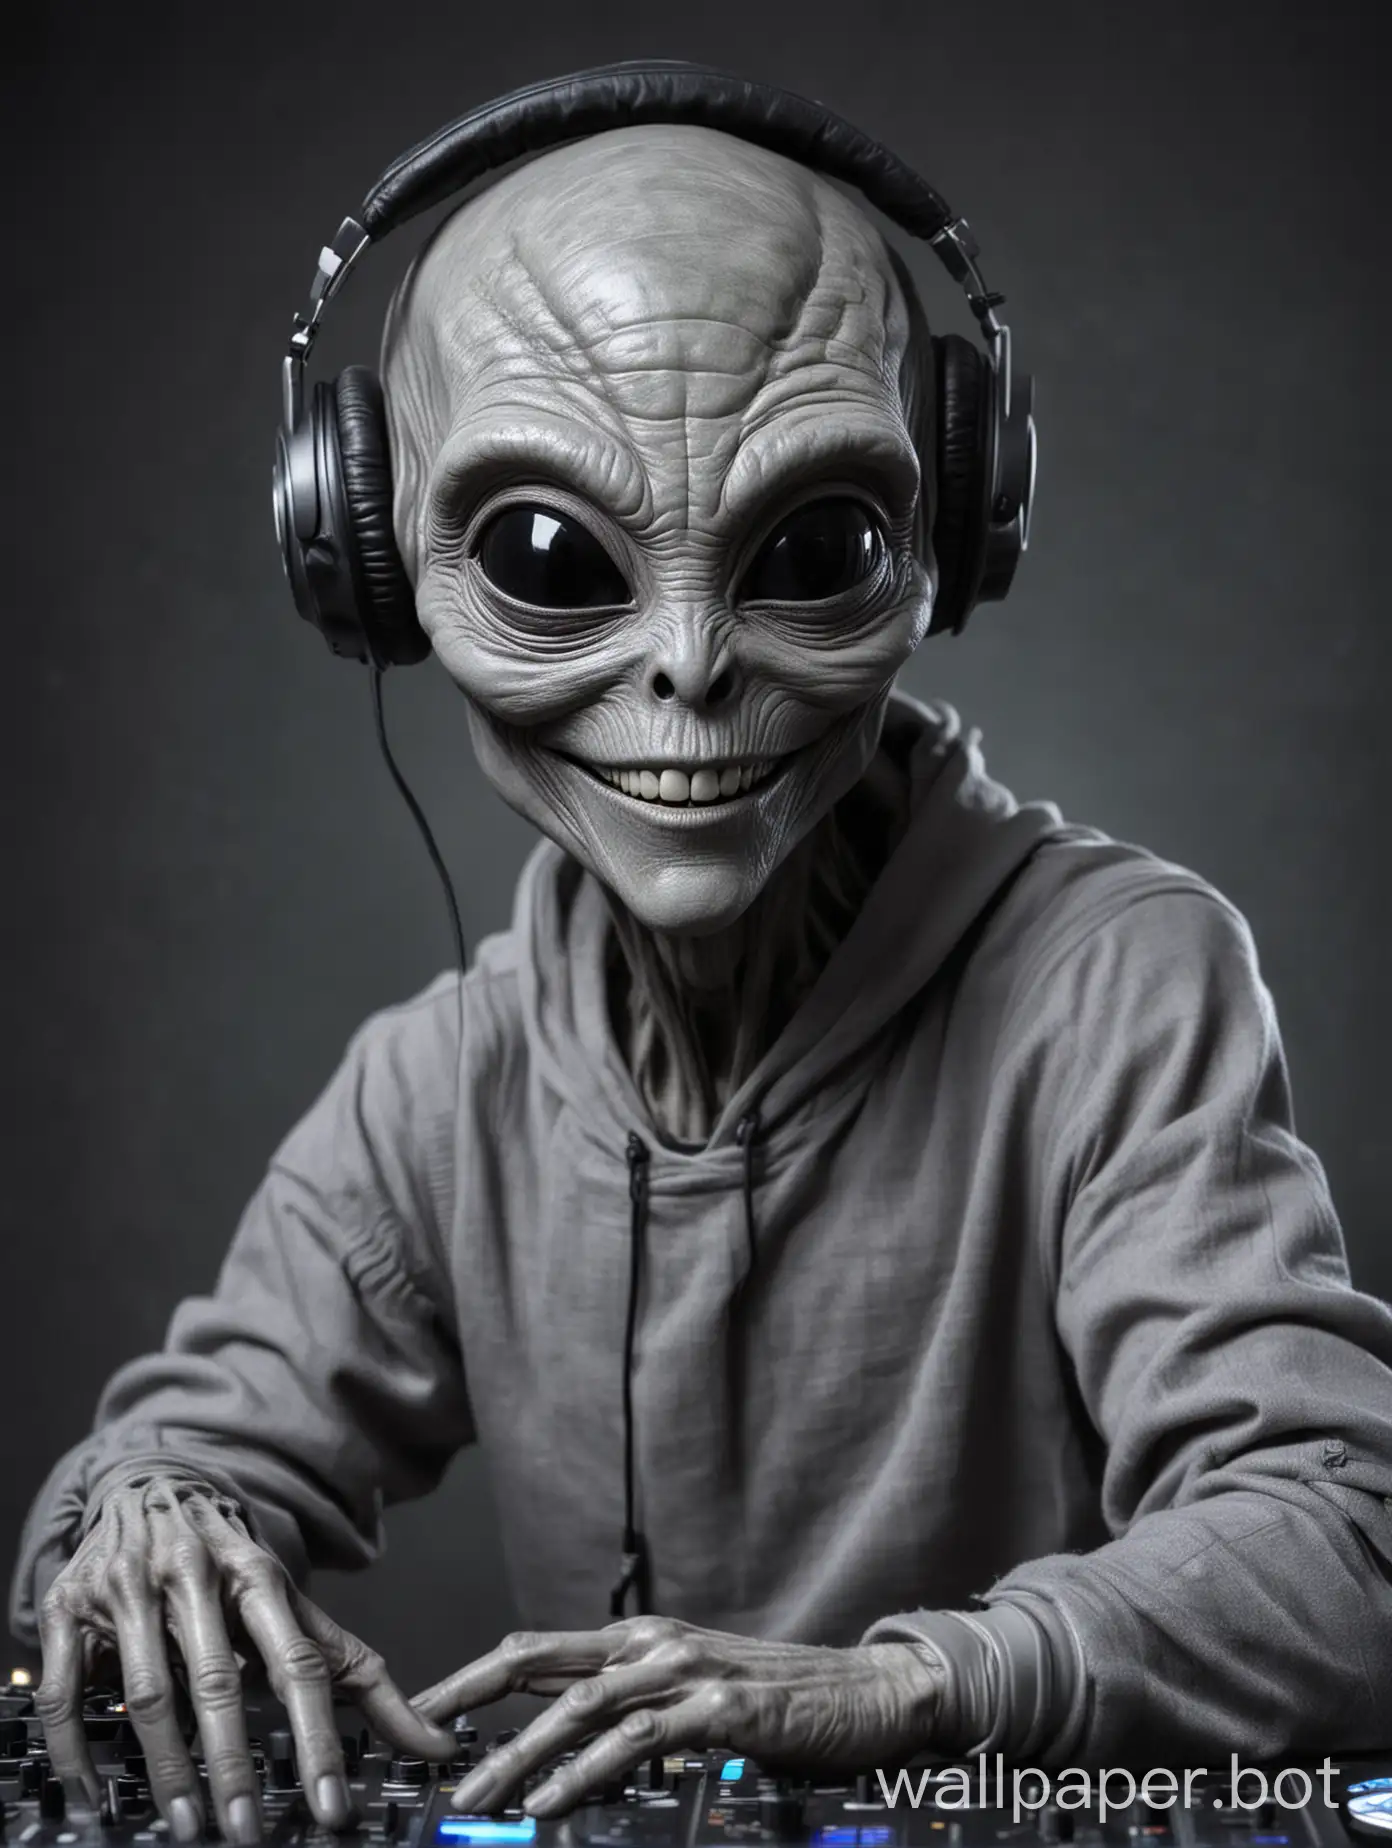 Smiling-Grey-Alien-DJ-with-Headphones